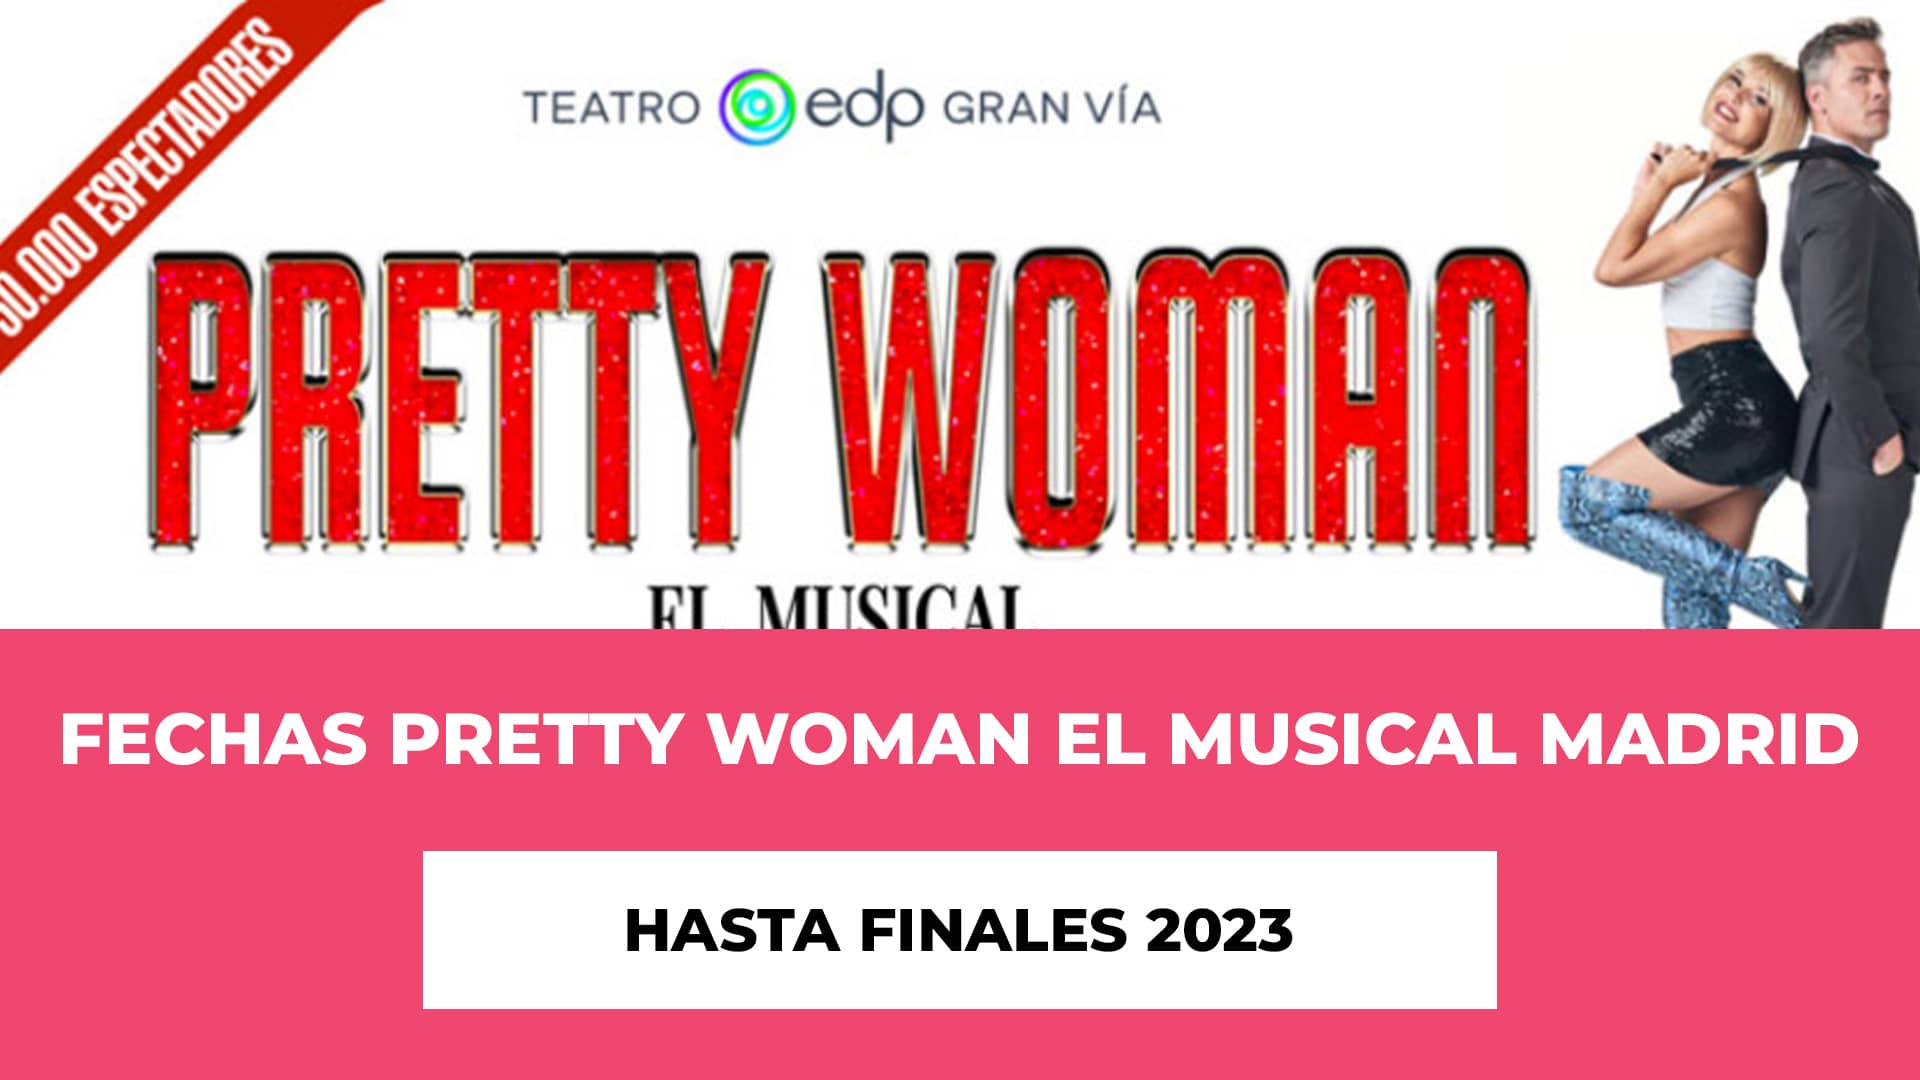 Descubre info de Fechas Pretty Woman El Musical Madrid hasta finales 2023 - Hablamos del musical, las entradas y sus precios y las fechas detalladas